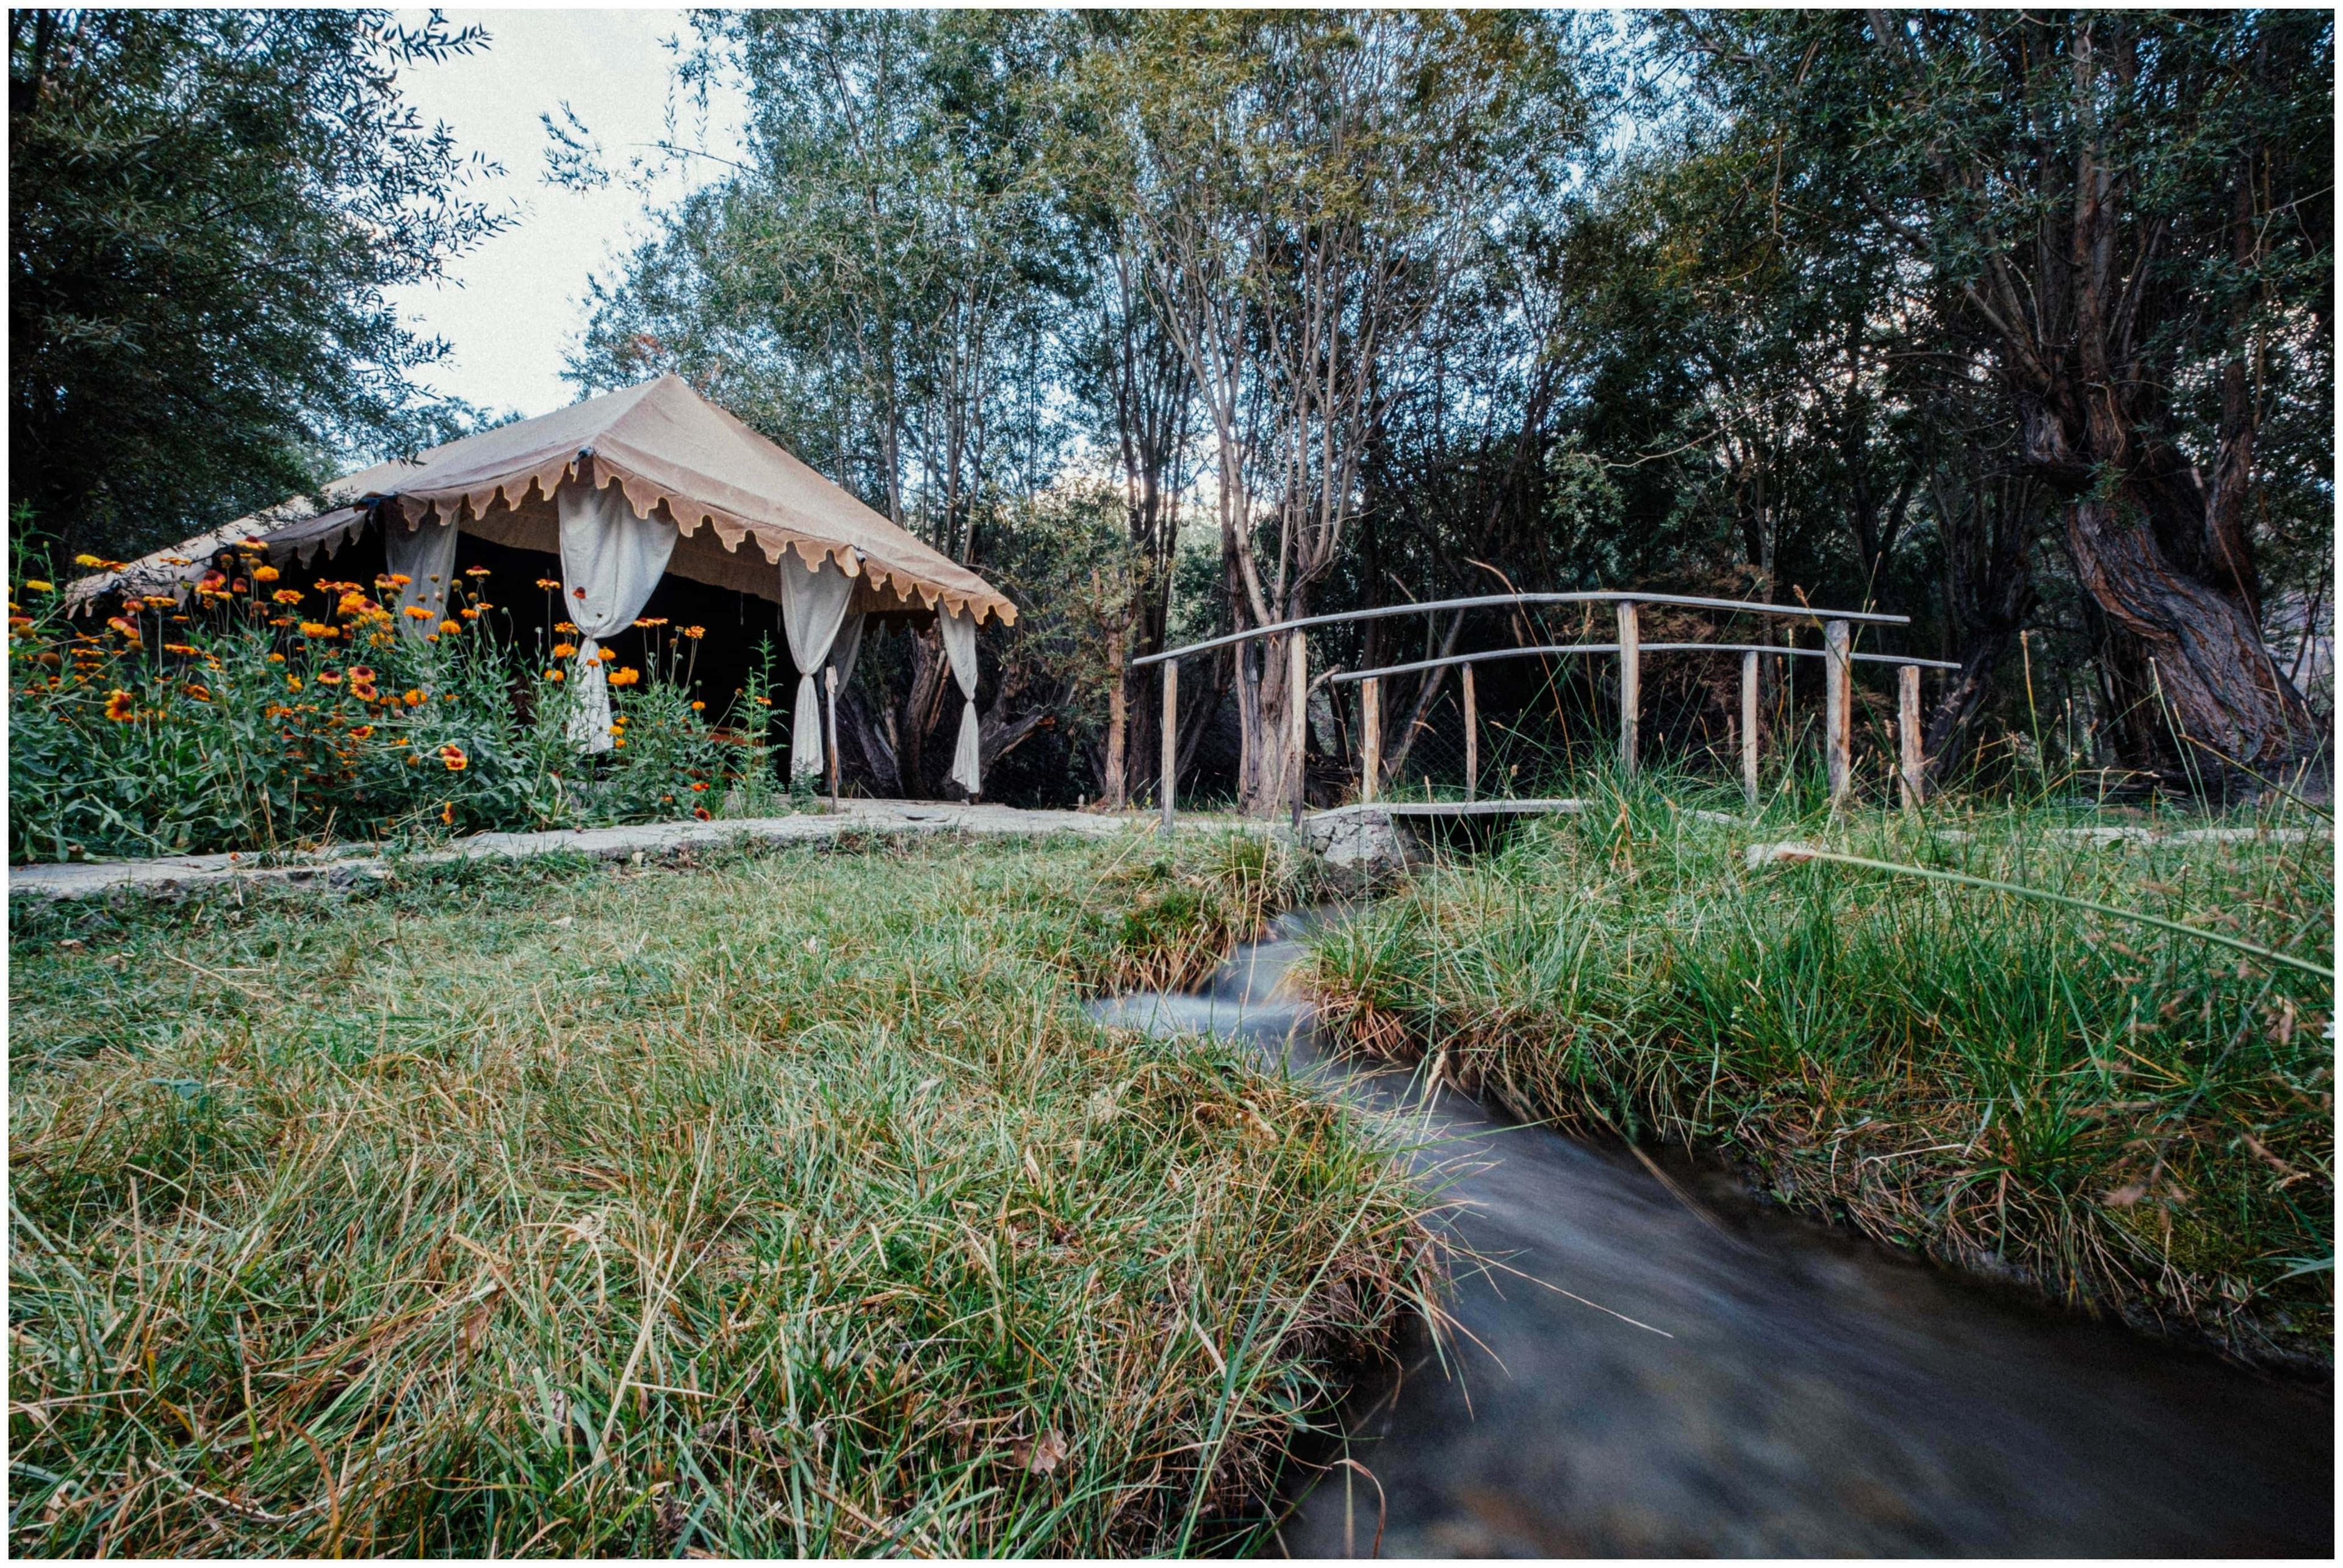 Nubra Eco Village